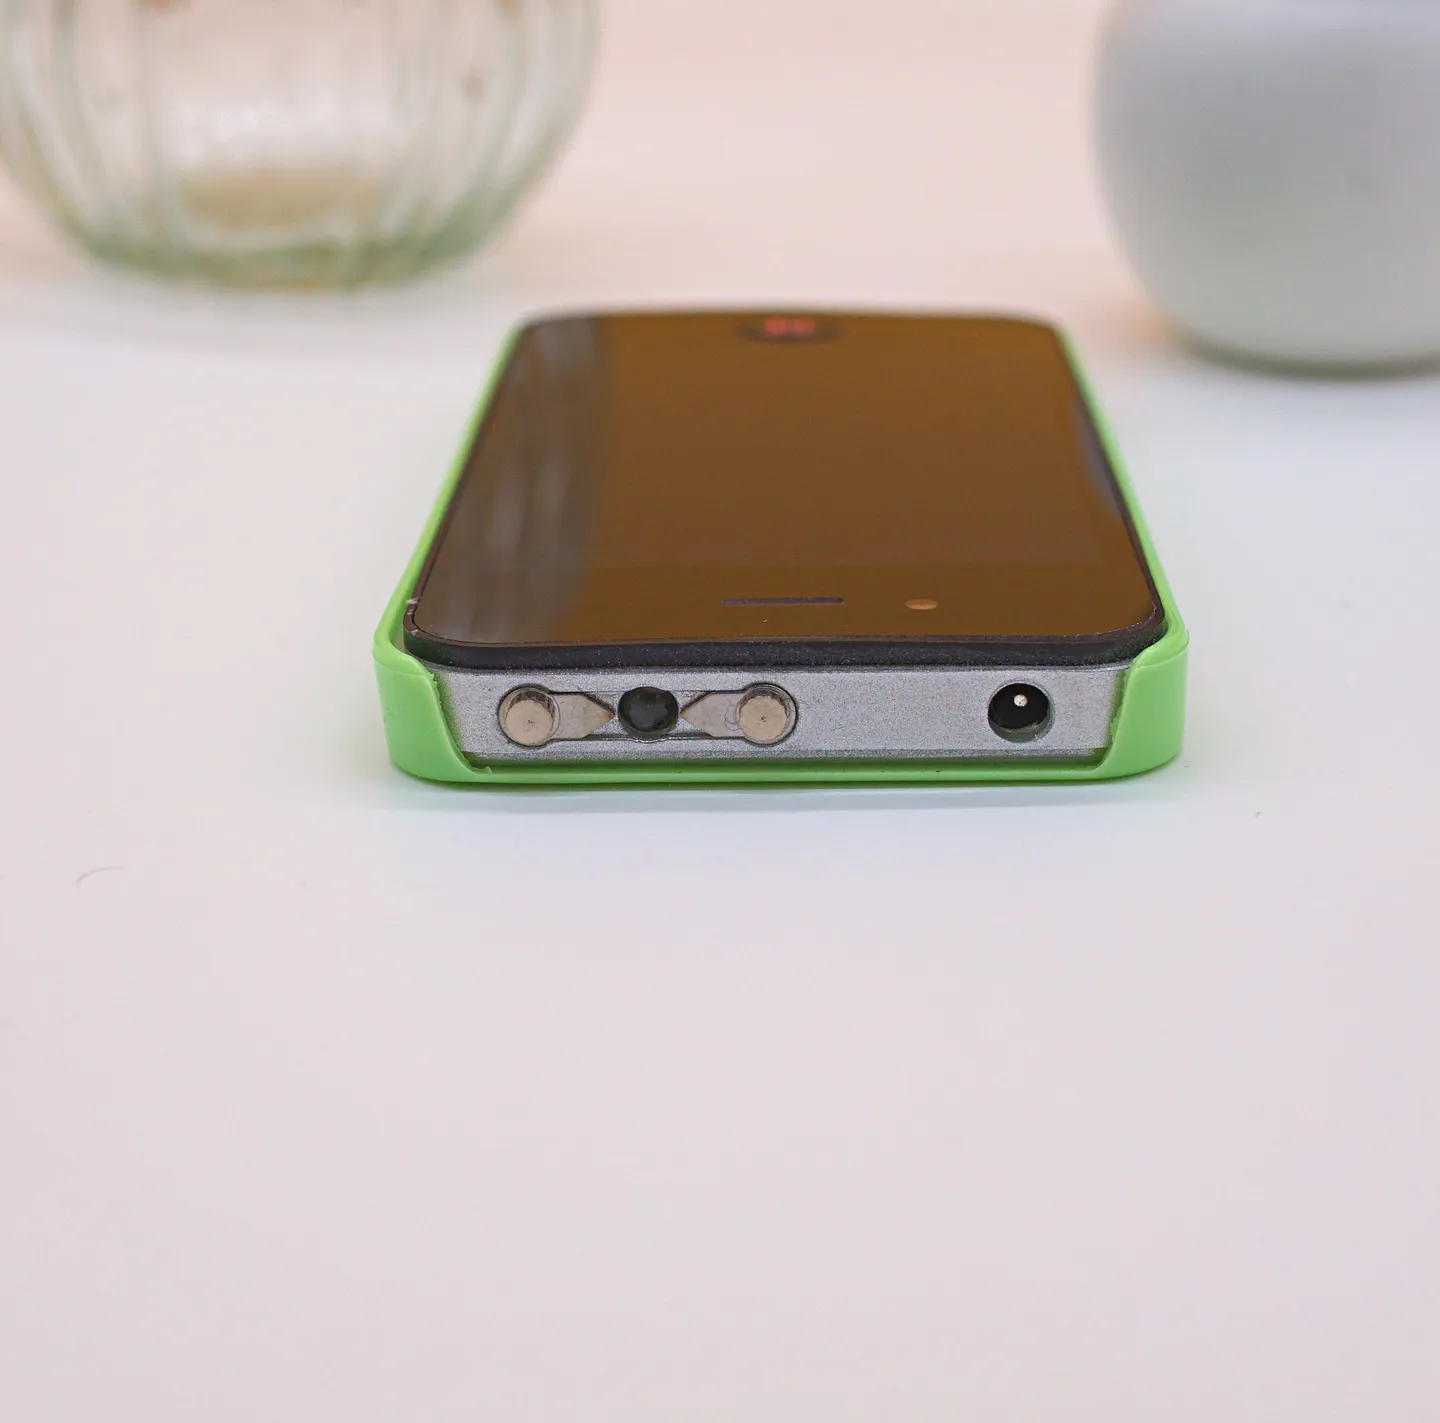 Shocker & Taser - Iphone Shocker Taser, 2 400 000 Volts, protégez-vous avec discrétion (Version Vert)